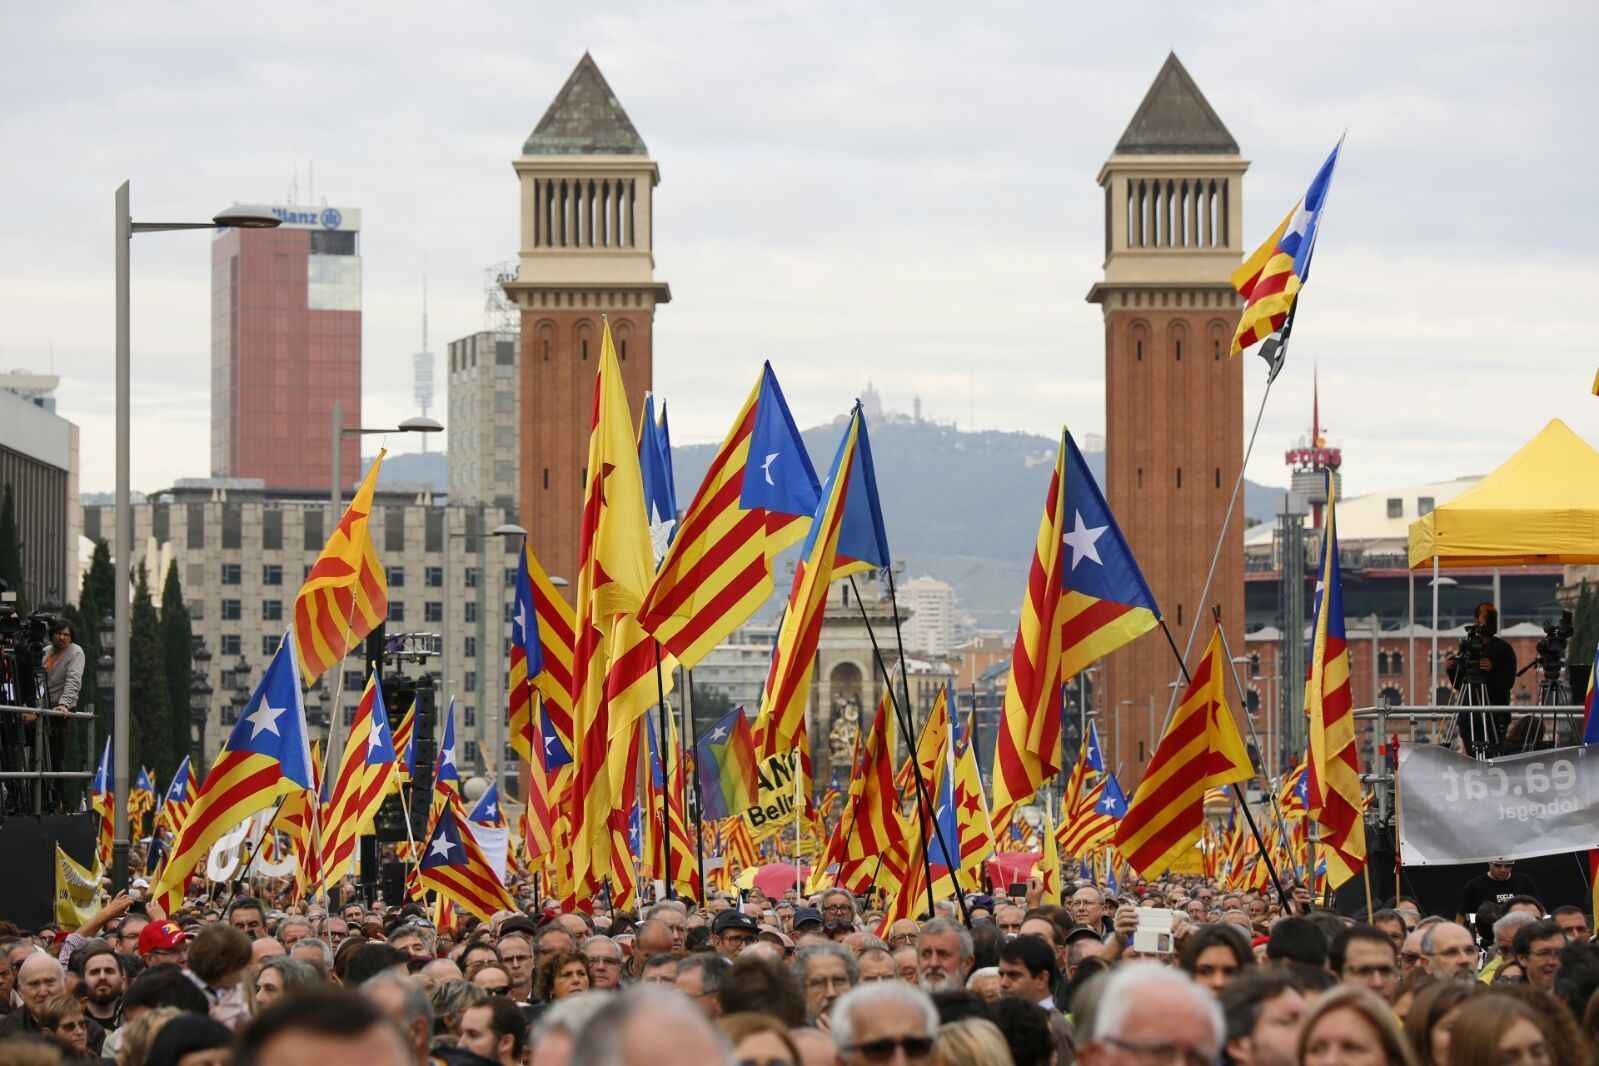 Un columnista d''El País' admet que "Espanya tindrà un problema" si hi ha molta participació l'1-O